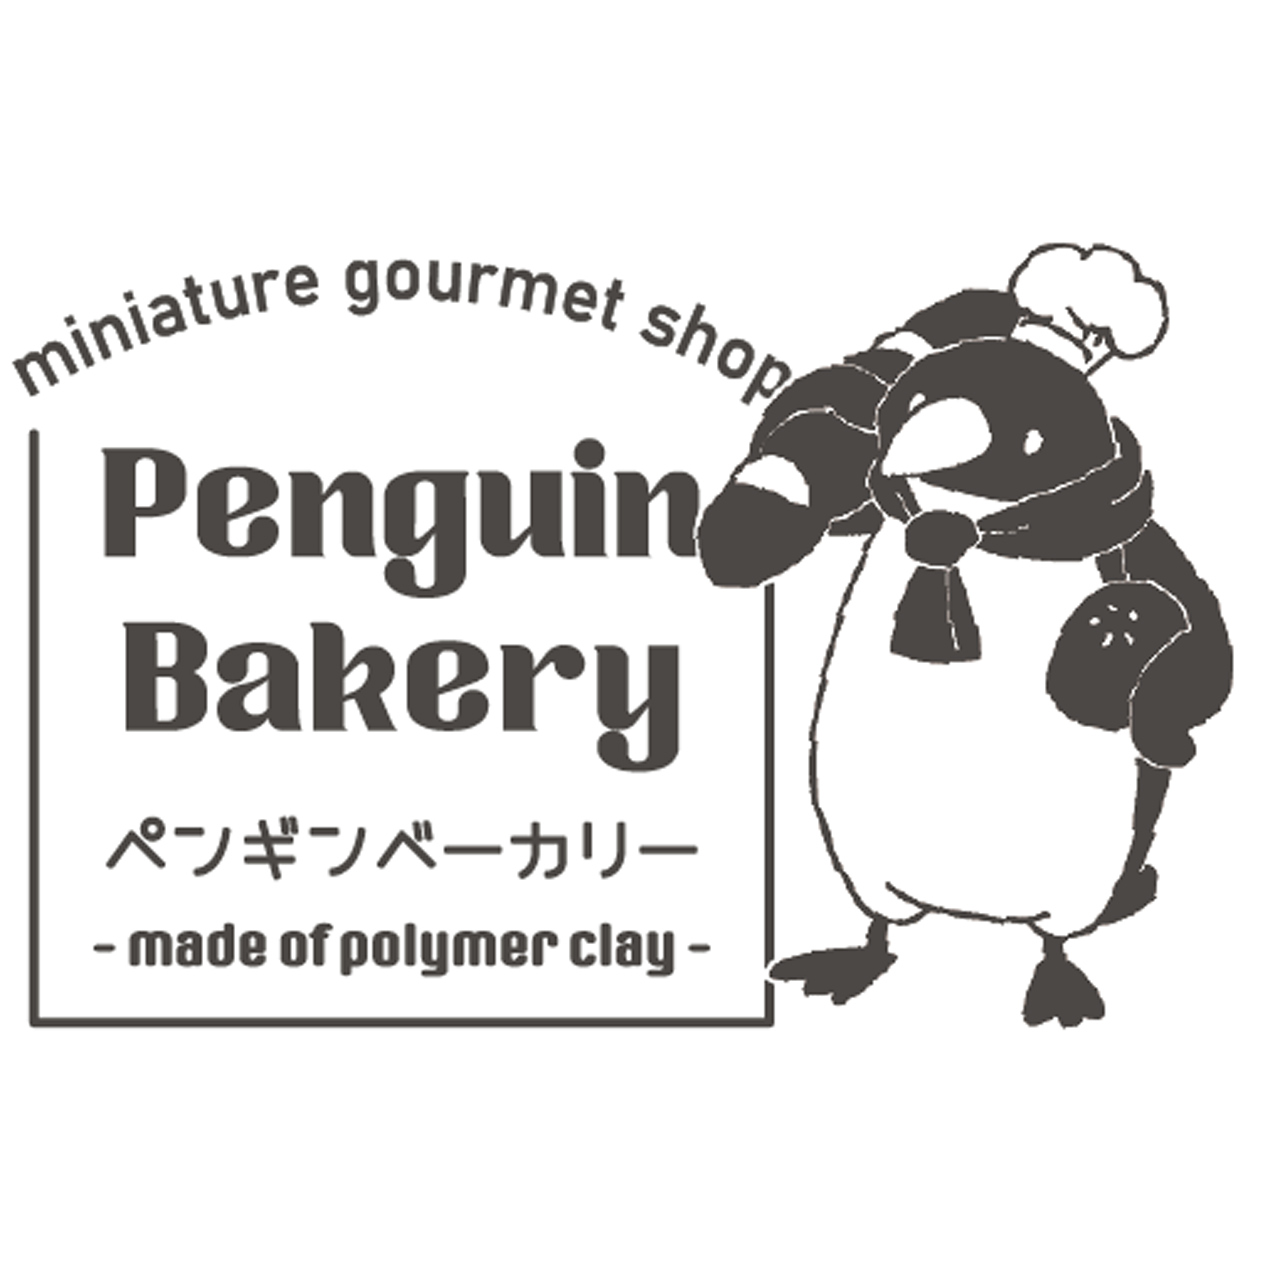 Penguin Bakery - ペンギンベーカリー